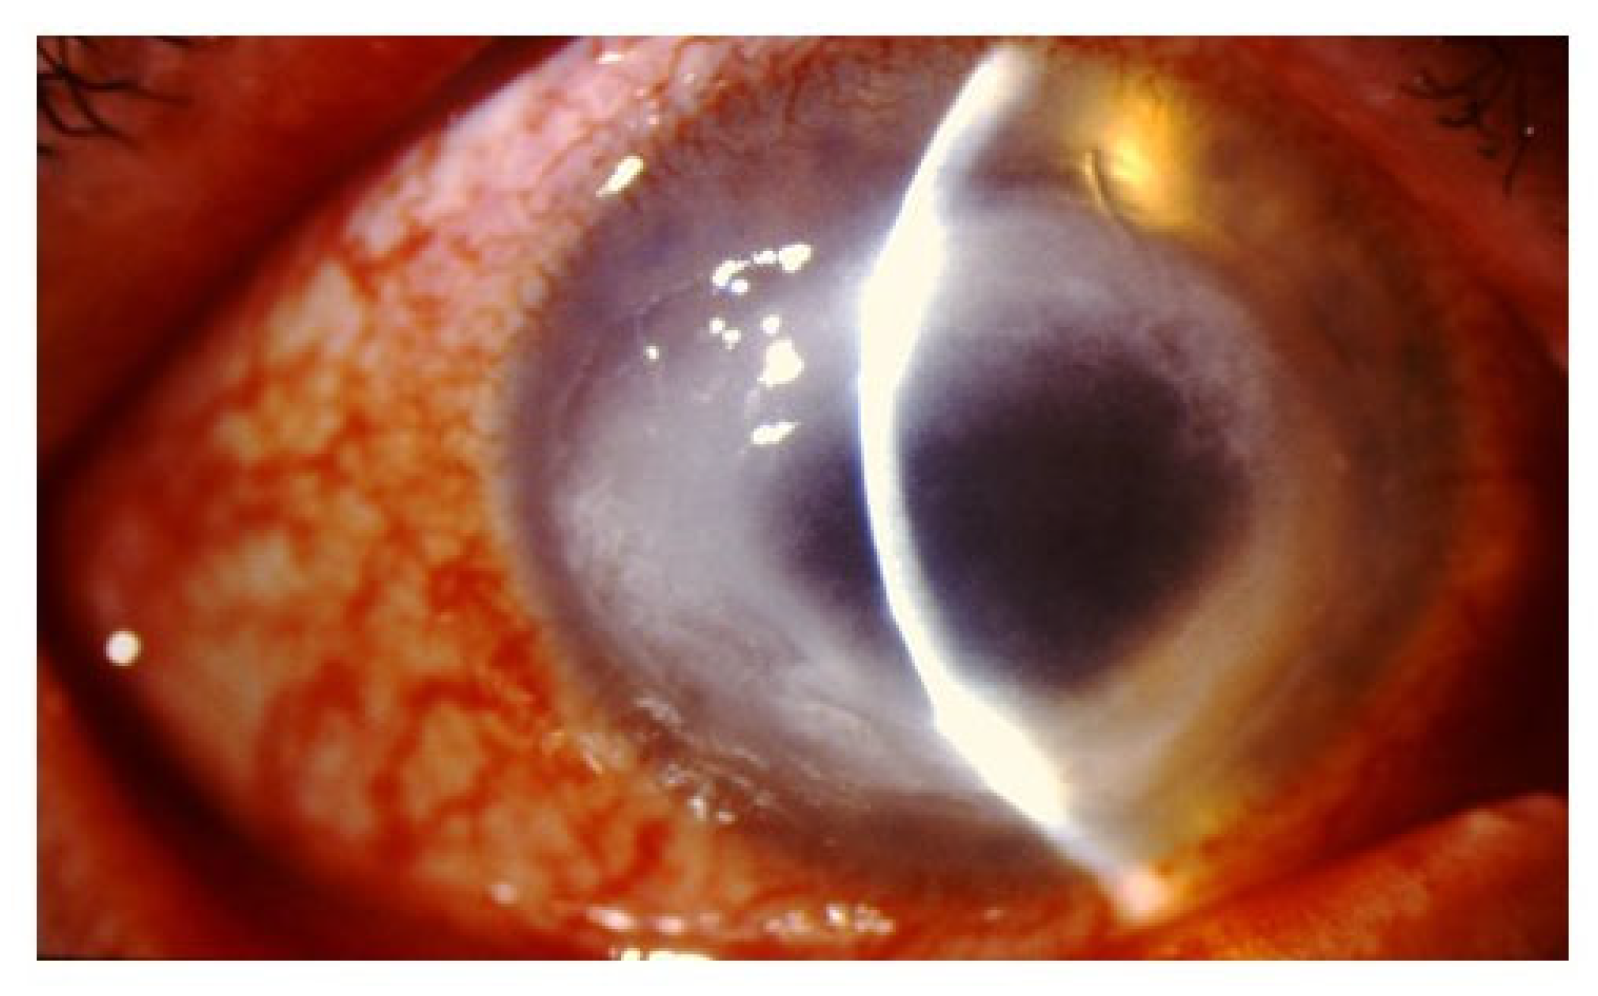 acanthamoeba corneal ulcer